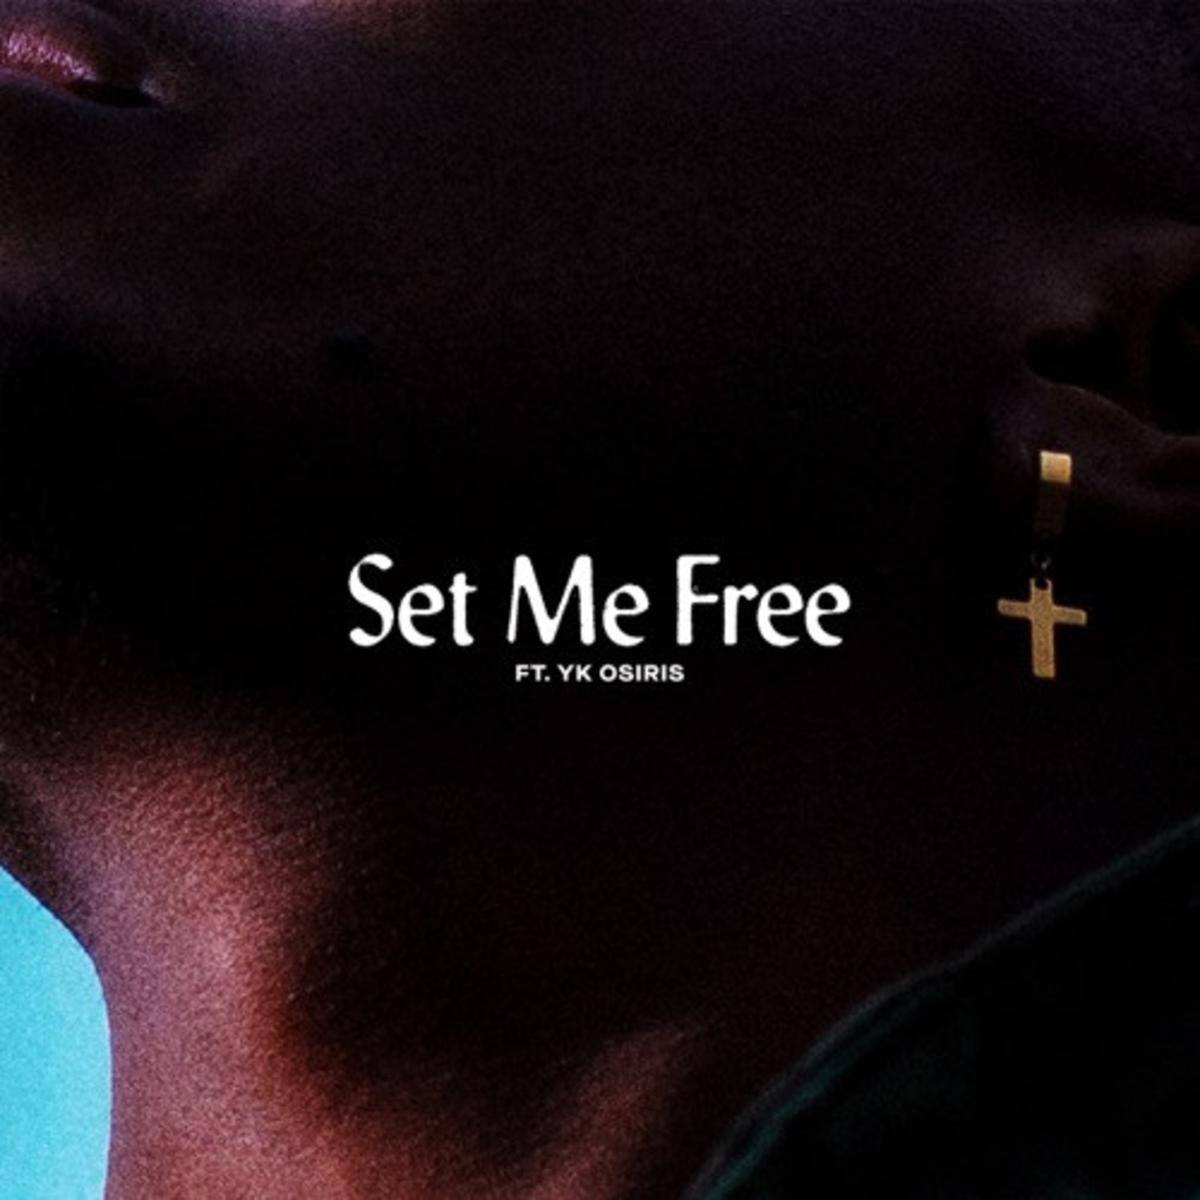 New Music Lecrae & YK Osiris - Set Me Free